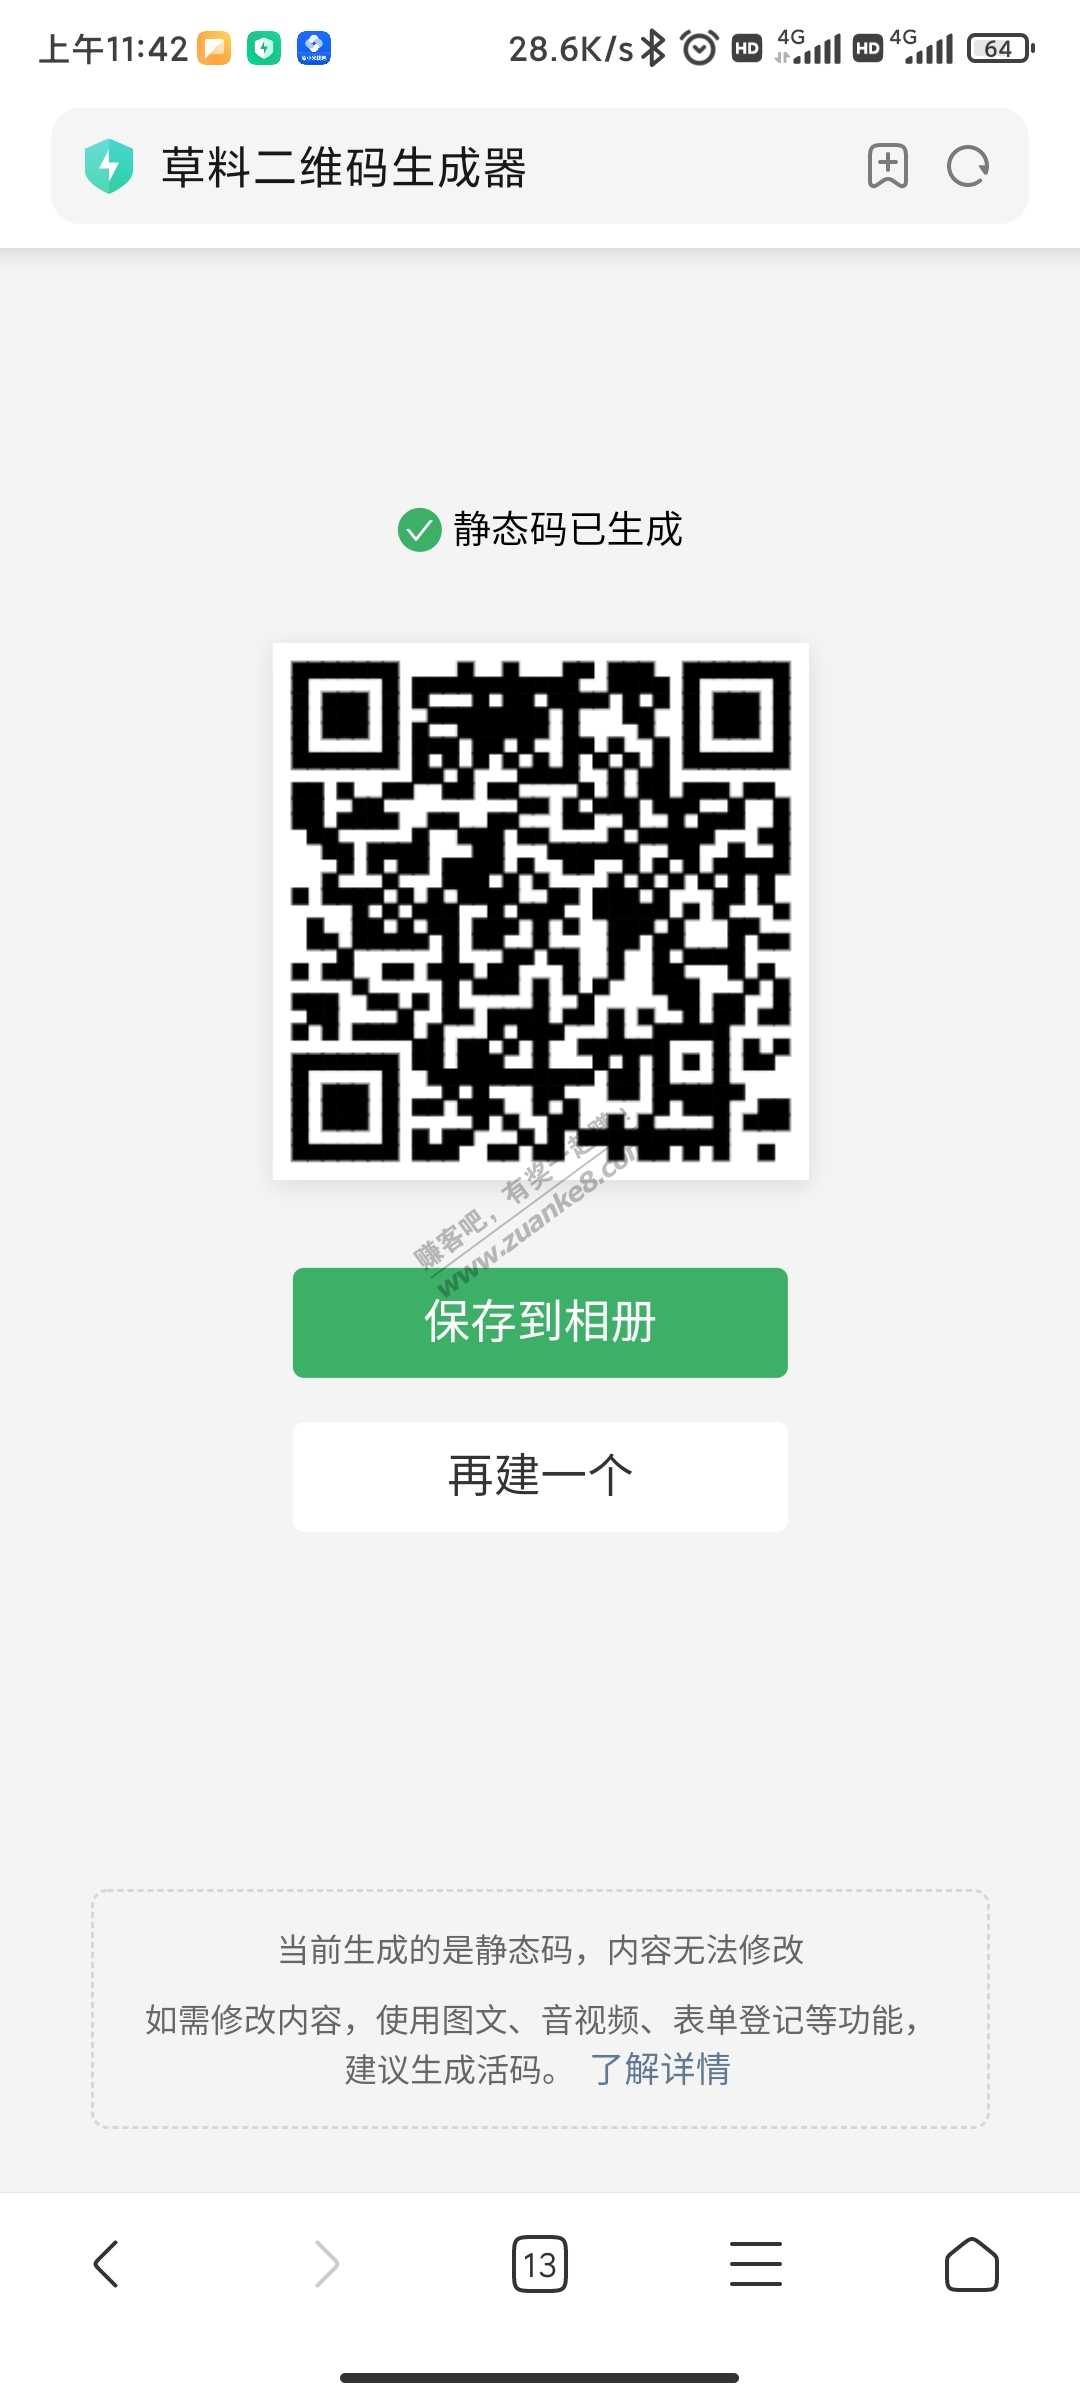 河南中行活动-1-3立减金+随机奖励-非邀请-惠小助(52huixz.com)